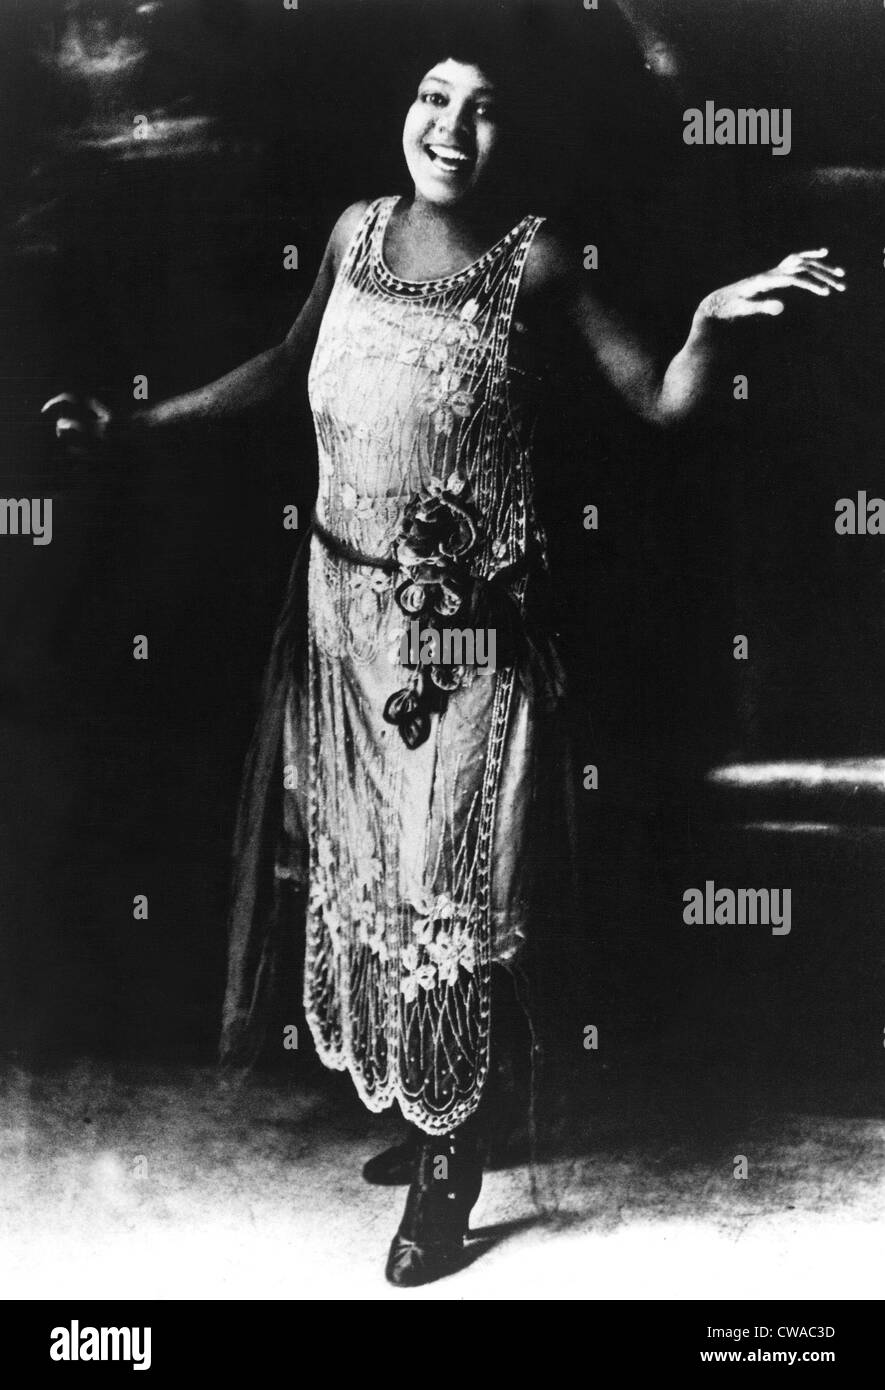 Bessie Smith, chanteur de blues, années 20. Avec la permission de la CSU : Archives / Everett Collection Banque D'Images